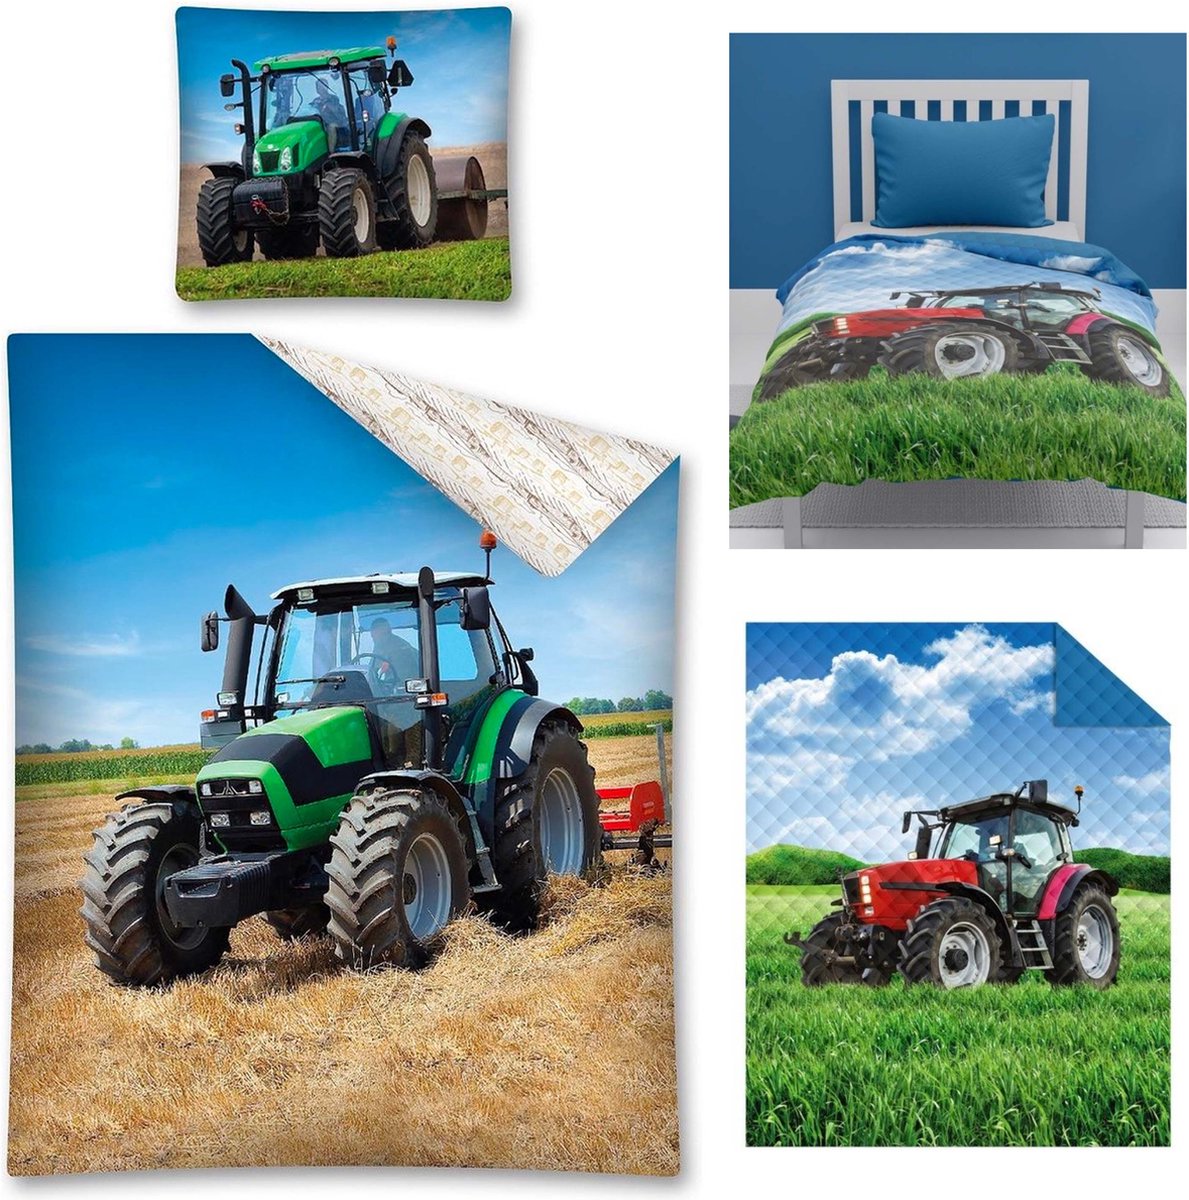 Dekbedovertrek Tractor- 140 x 200 cm - 1persoons- Katoen - Groen , incl. Tractor Bedsprei- Deken- 170x210- Polyester- lichtgewicht- Dekbed deken